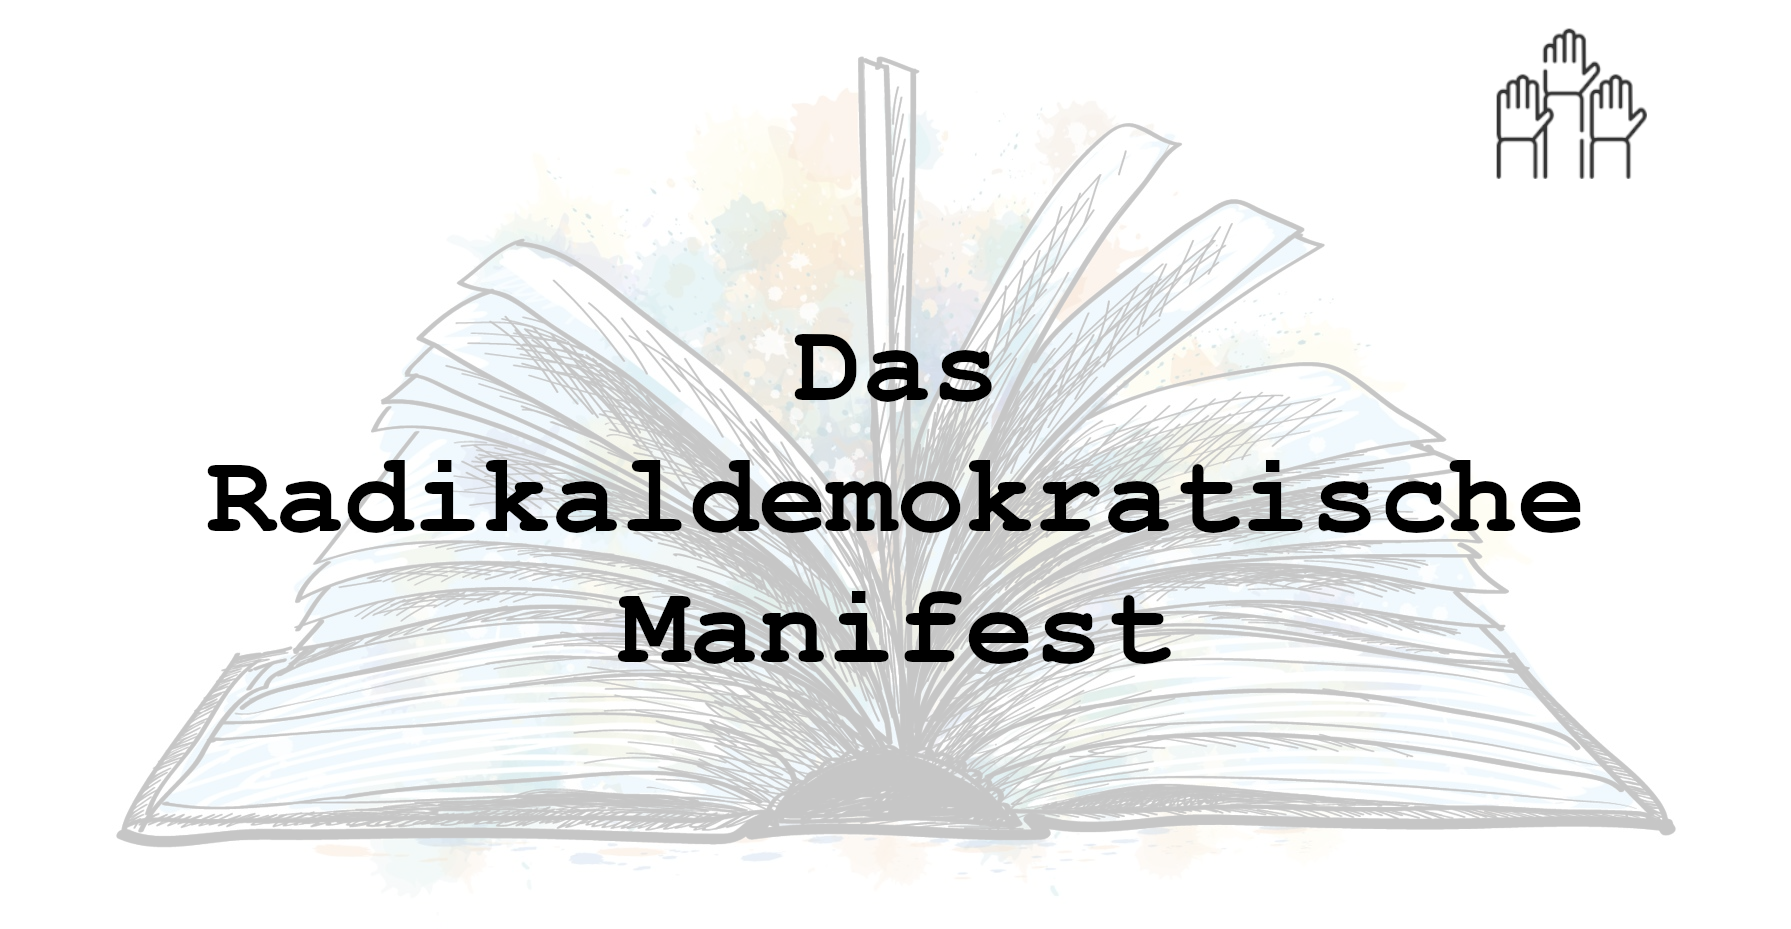 Das radikaldemokratische Manifest